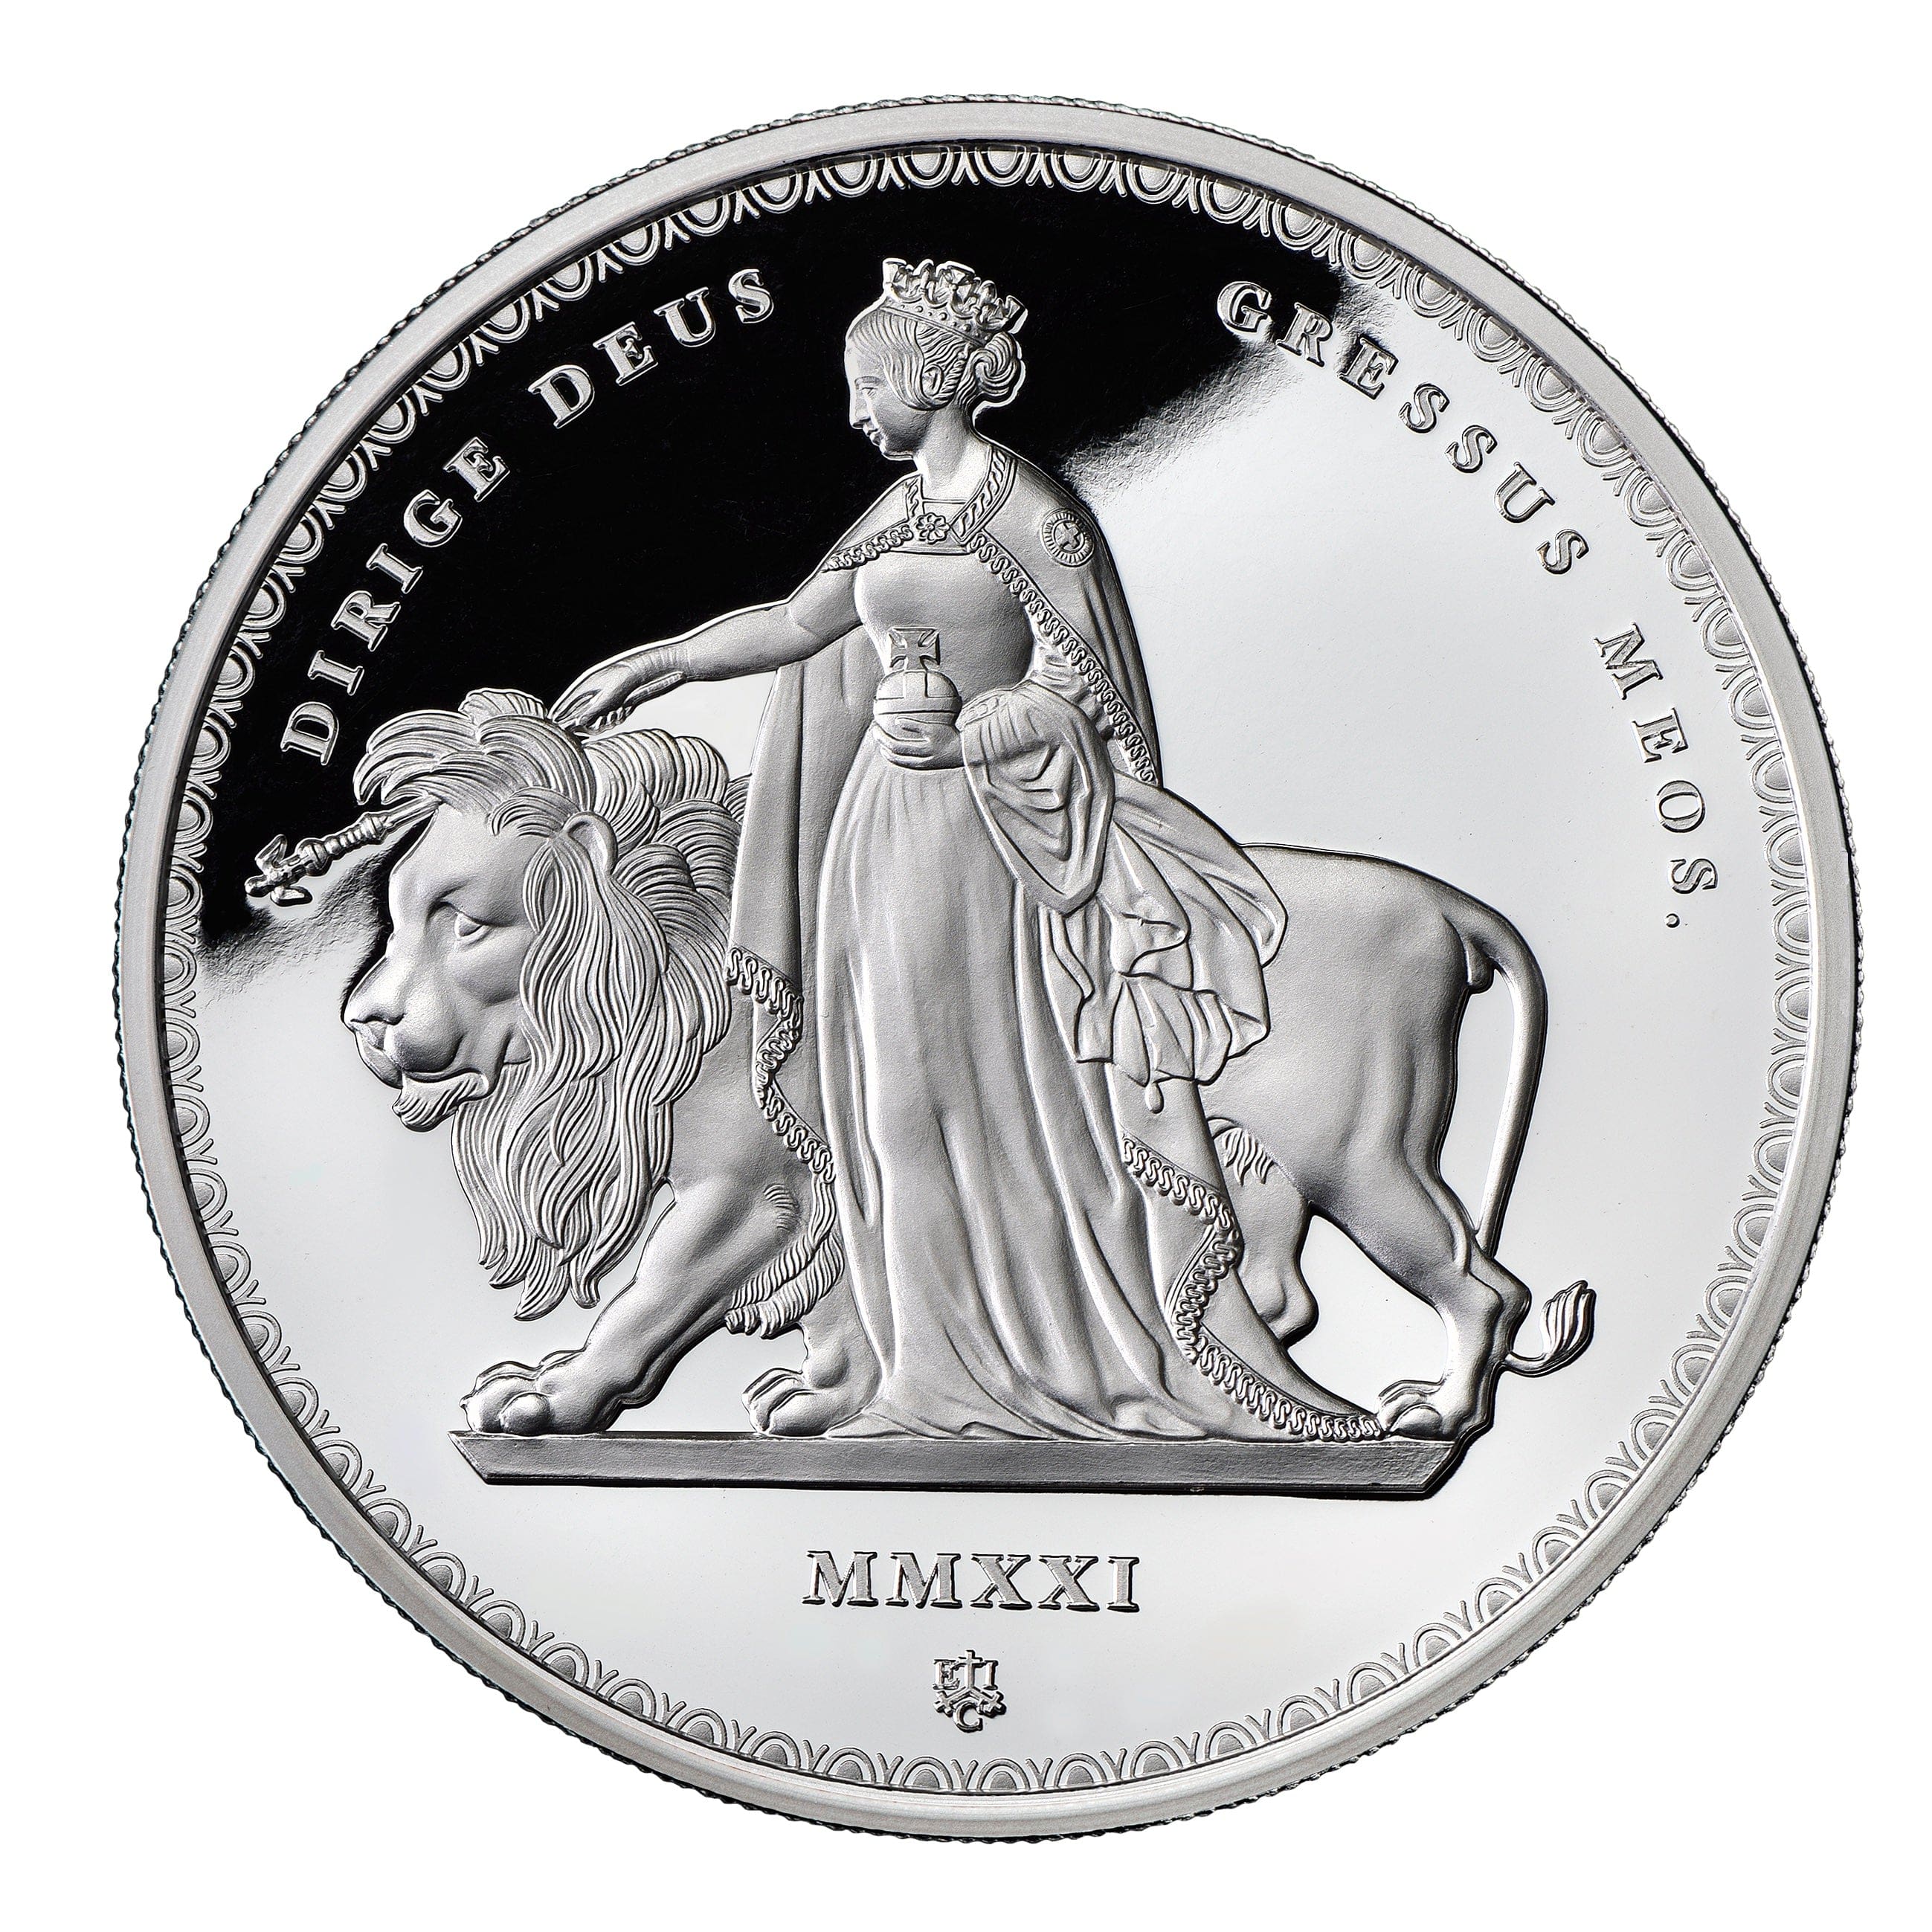 2016 ブリタニア ウナ ライオン 2ポンド銀貨 NGC PF70 UC - 旧貨幣 